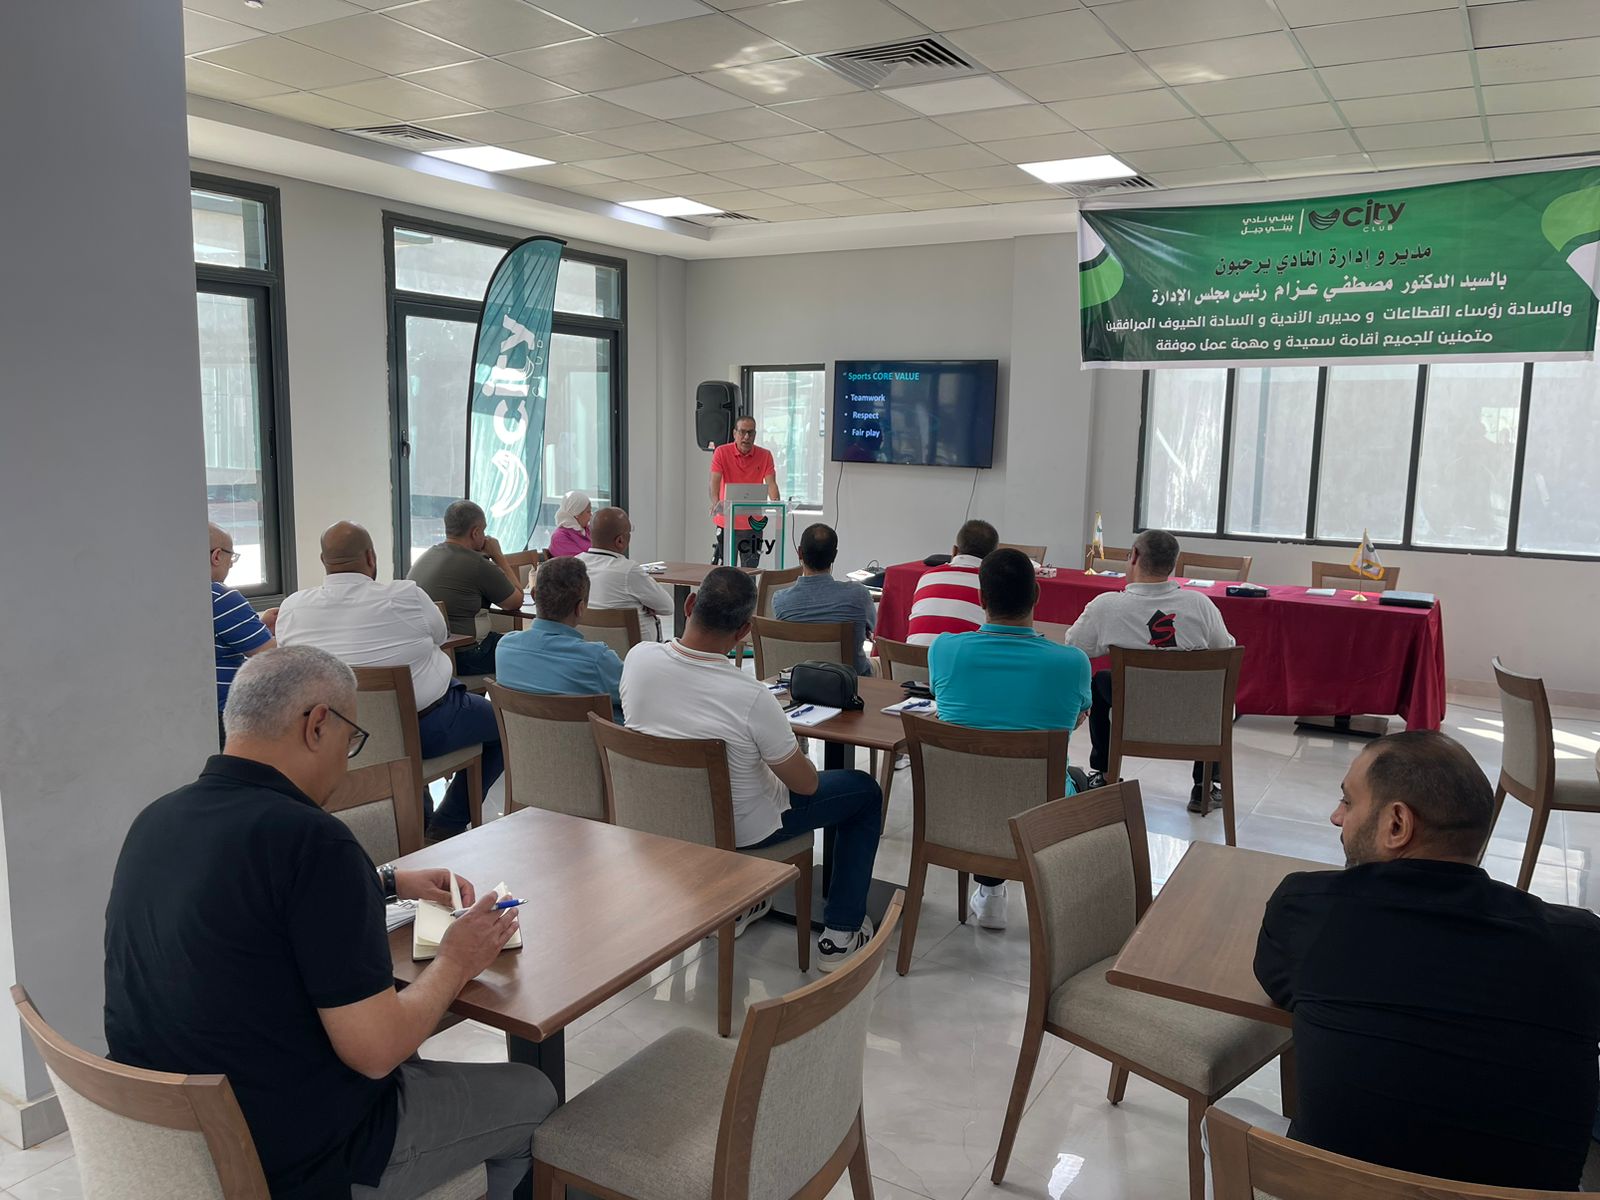 سيتي كلوب يعقد ورشة العمل الأولى في كفر الشيخ لمراجعة خطط العمل والأنشطة (2)